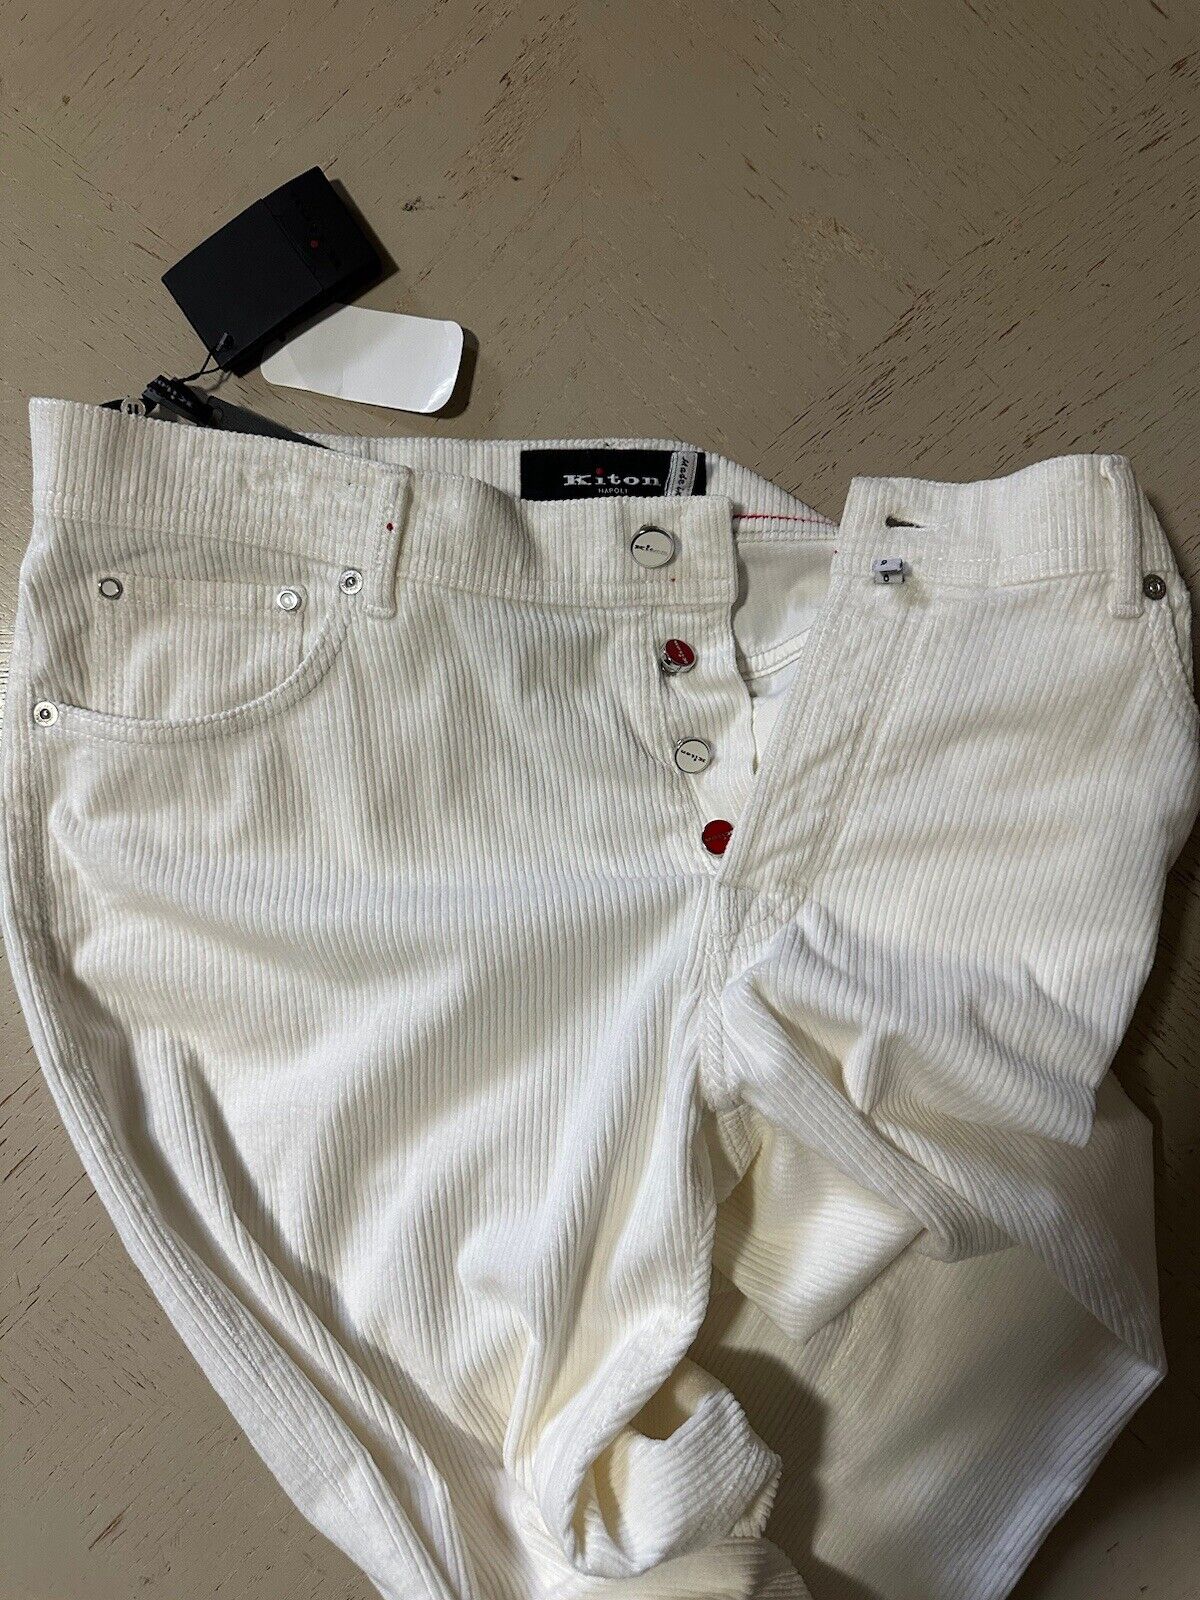 NWT $1495 Kiton Men’s Corduroy Cashmere Blend Pants White 38 US/54 Eu Italy